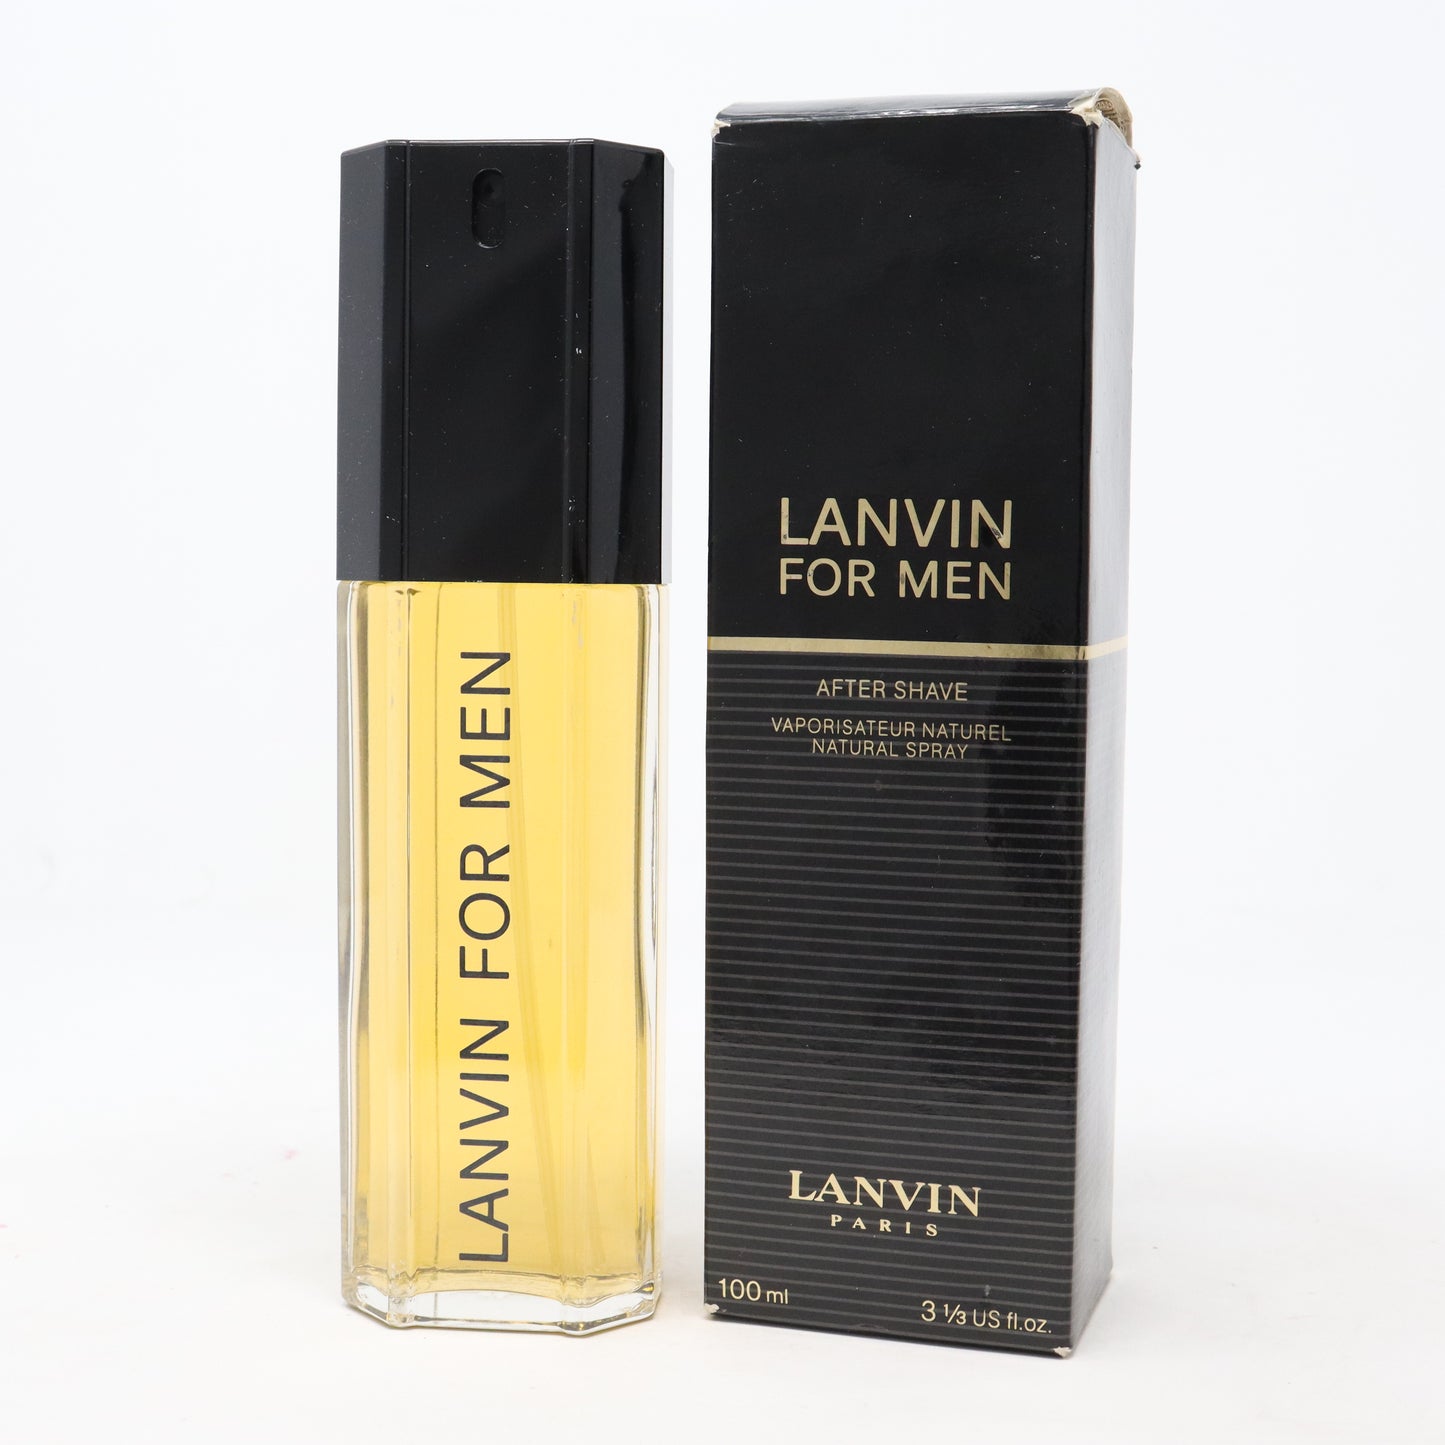 Lanvin For Men After Shave 100 ml